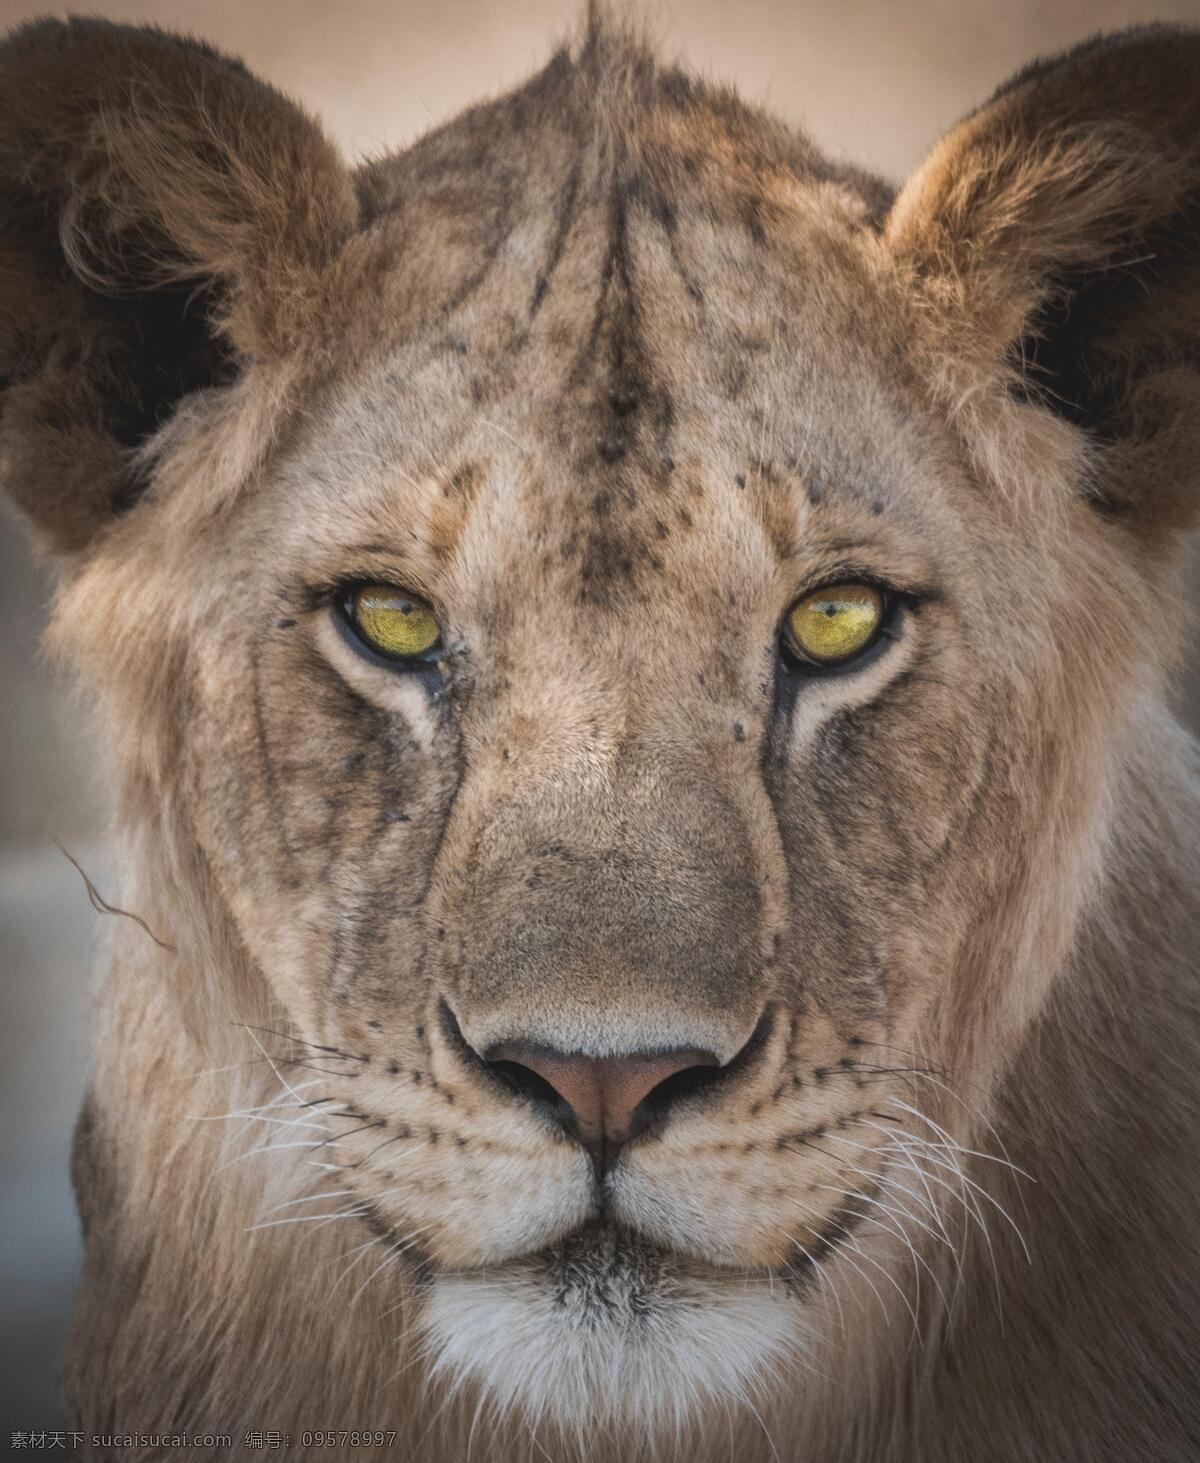 狮子 狮王 草原雄狮 猛兽 野生动物 保护动物 生物世界 设计素材 动物